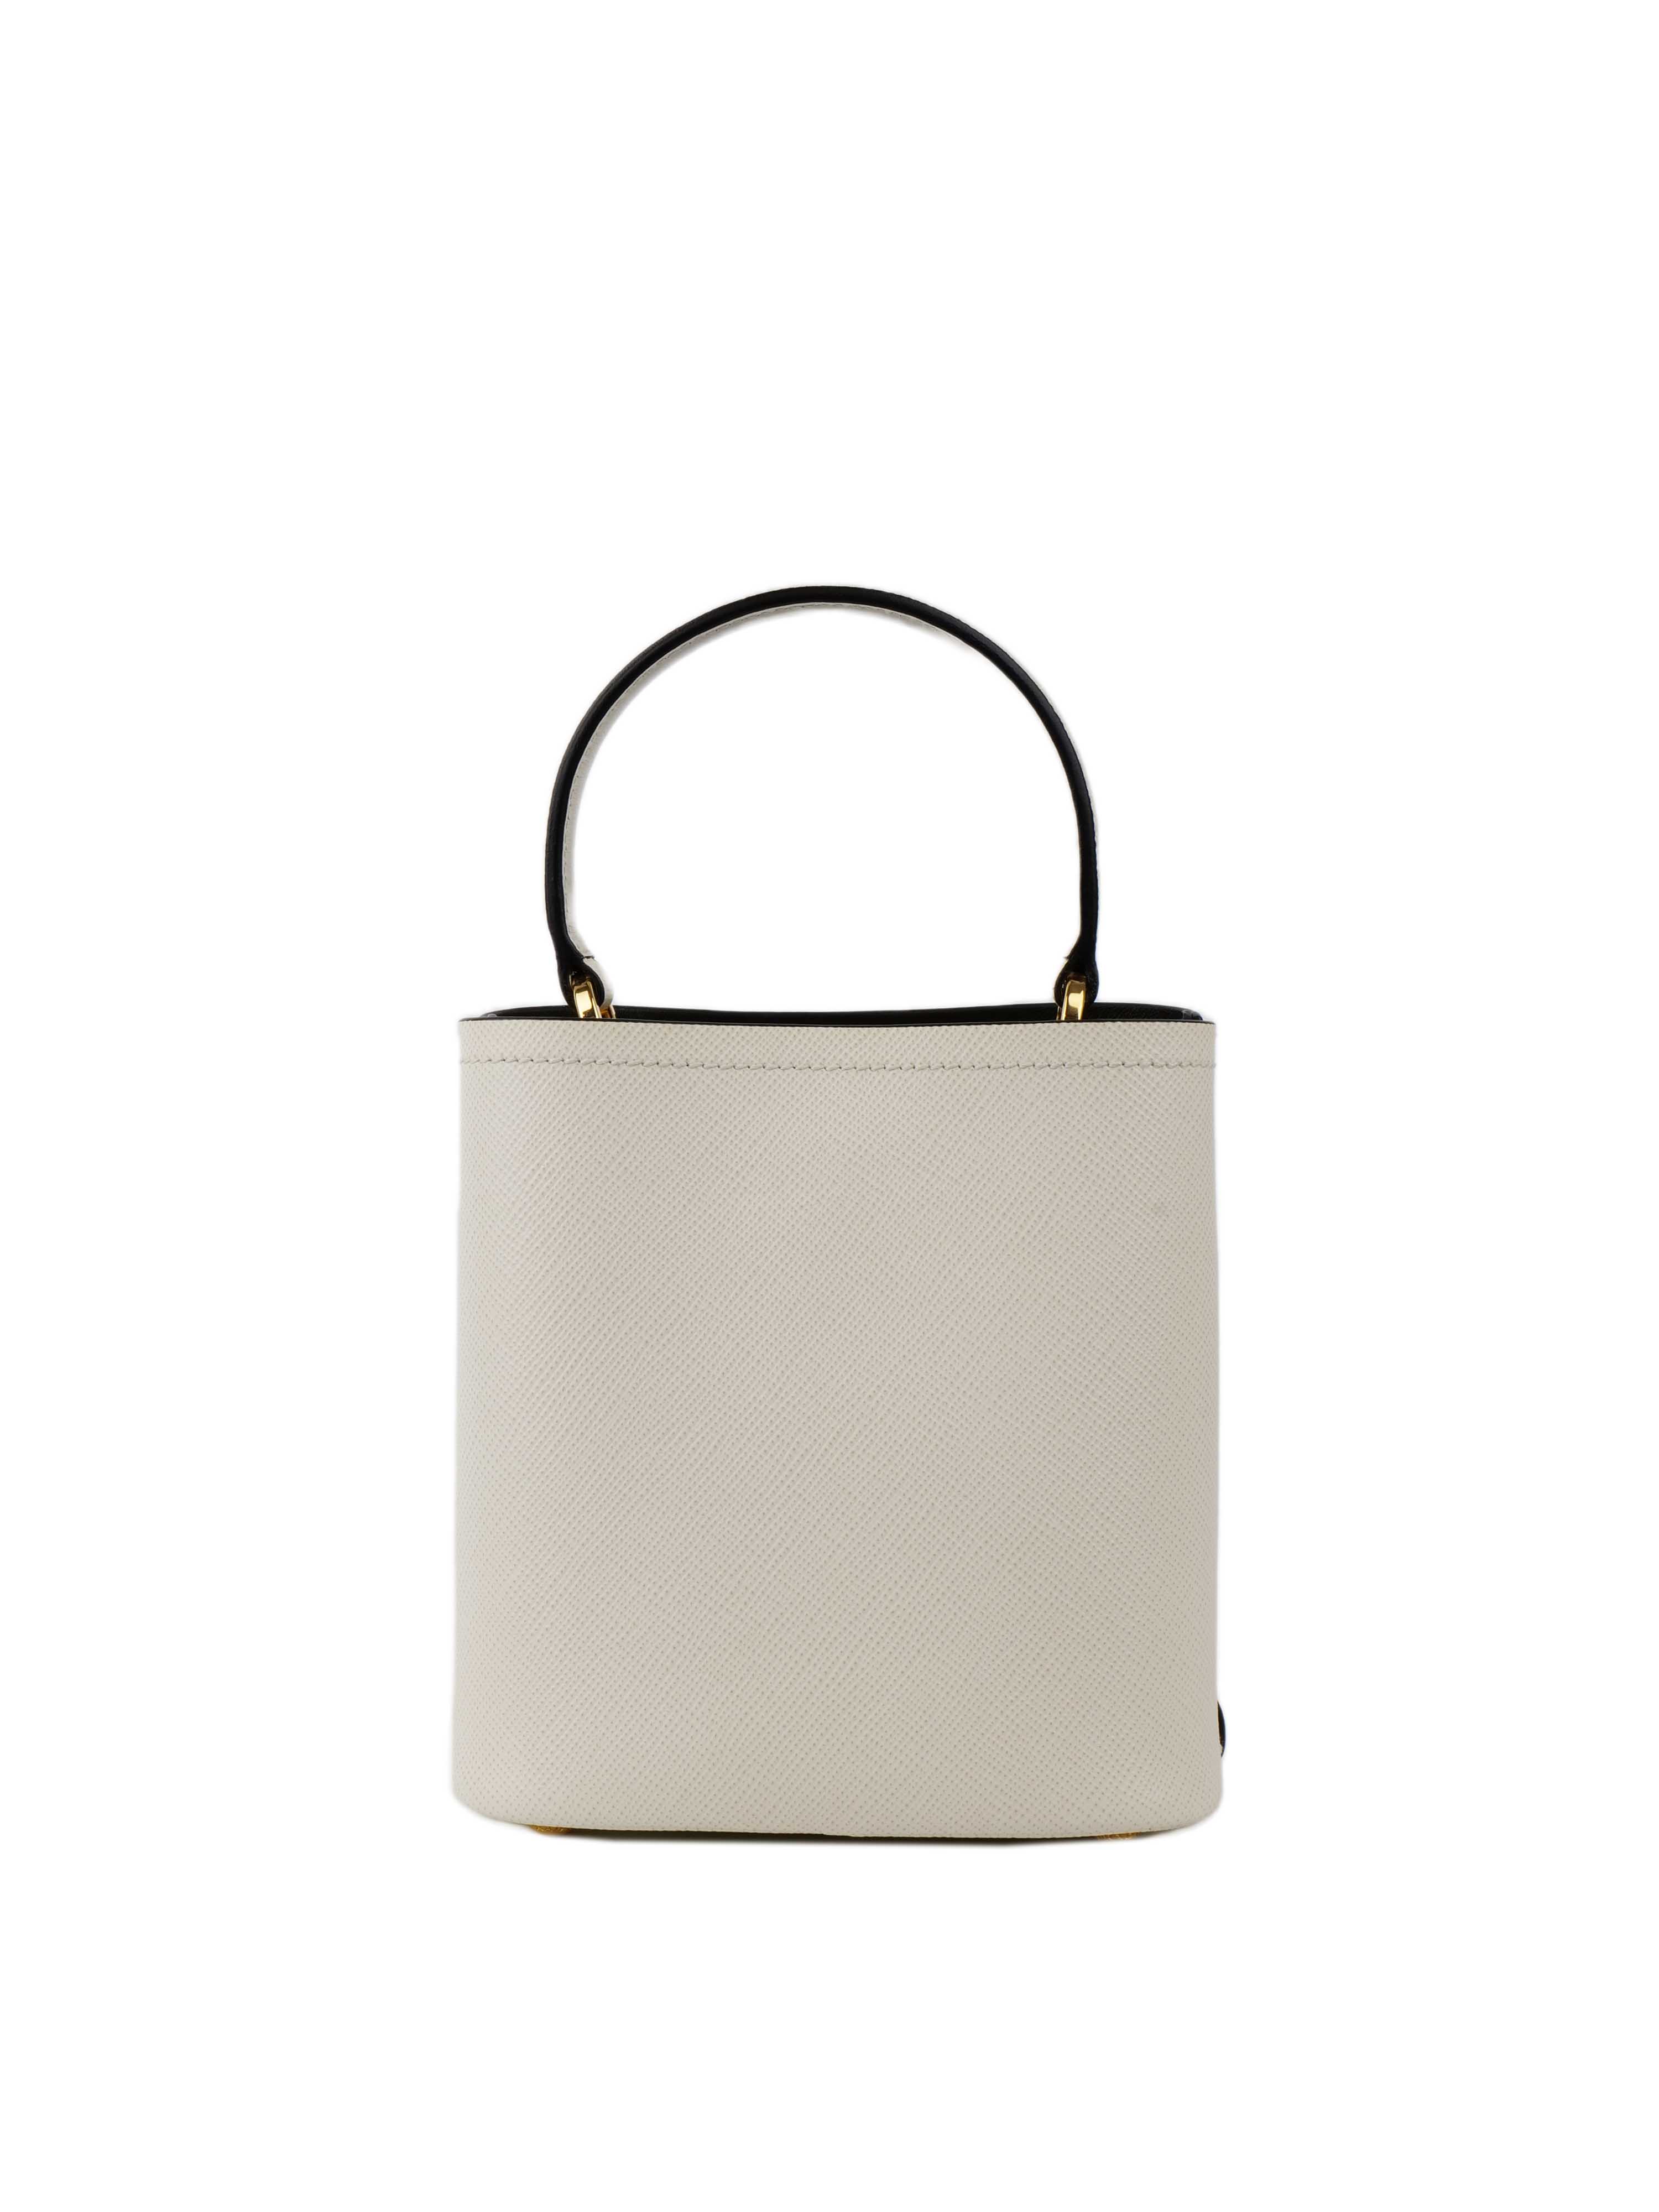 Prada Small Saffiano White Panier Bag.